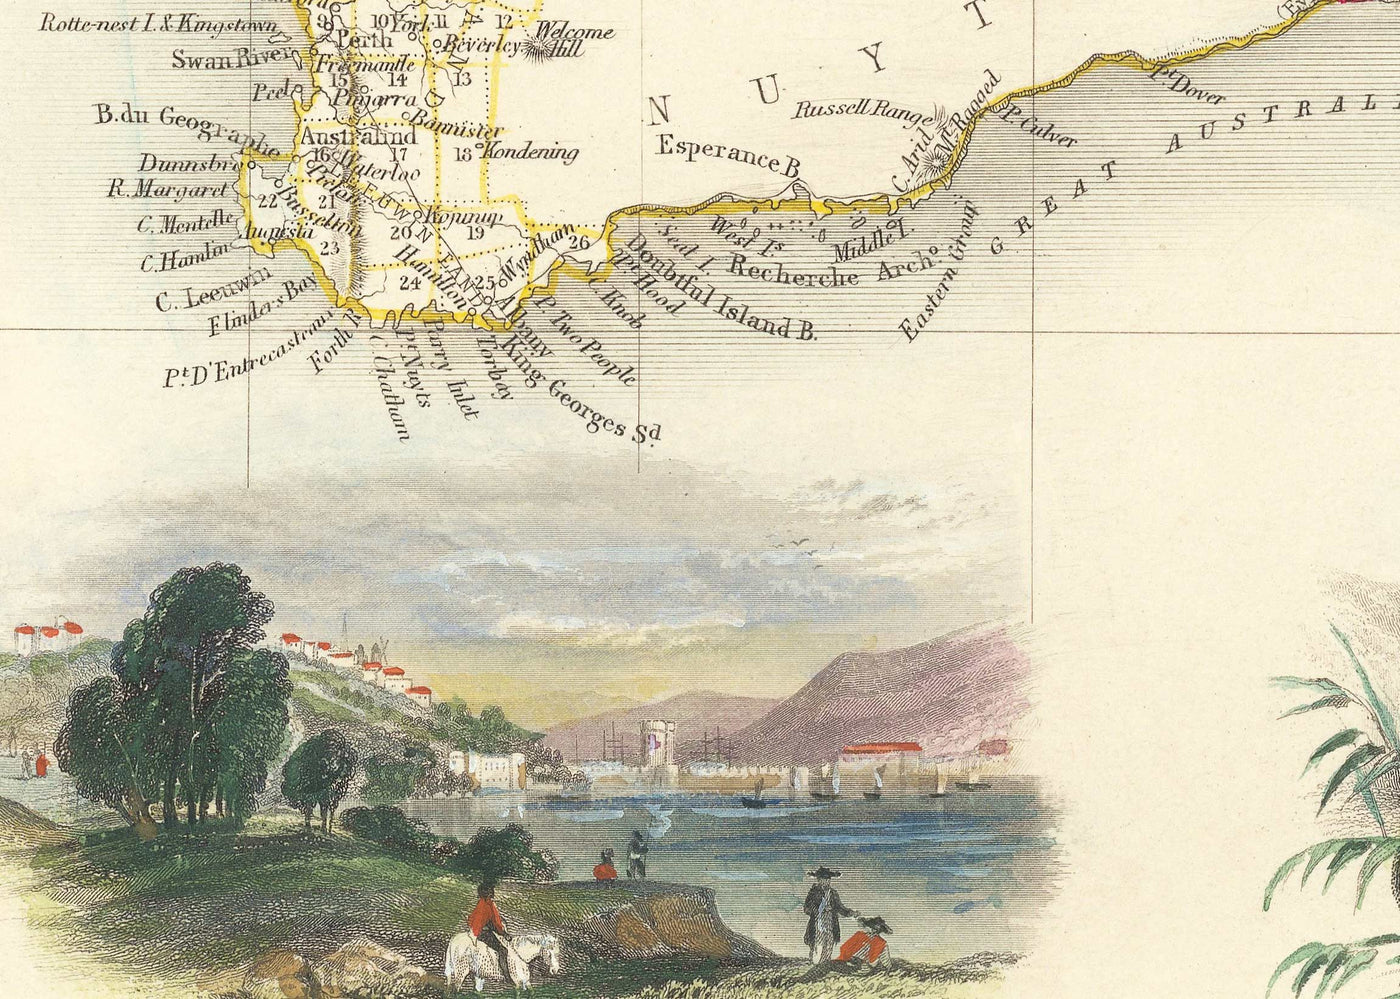 Alte Karte von Australien und Tasmanien, 1851, von Tallis & Rapkin - Sydney, Melbourne, Perth